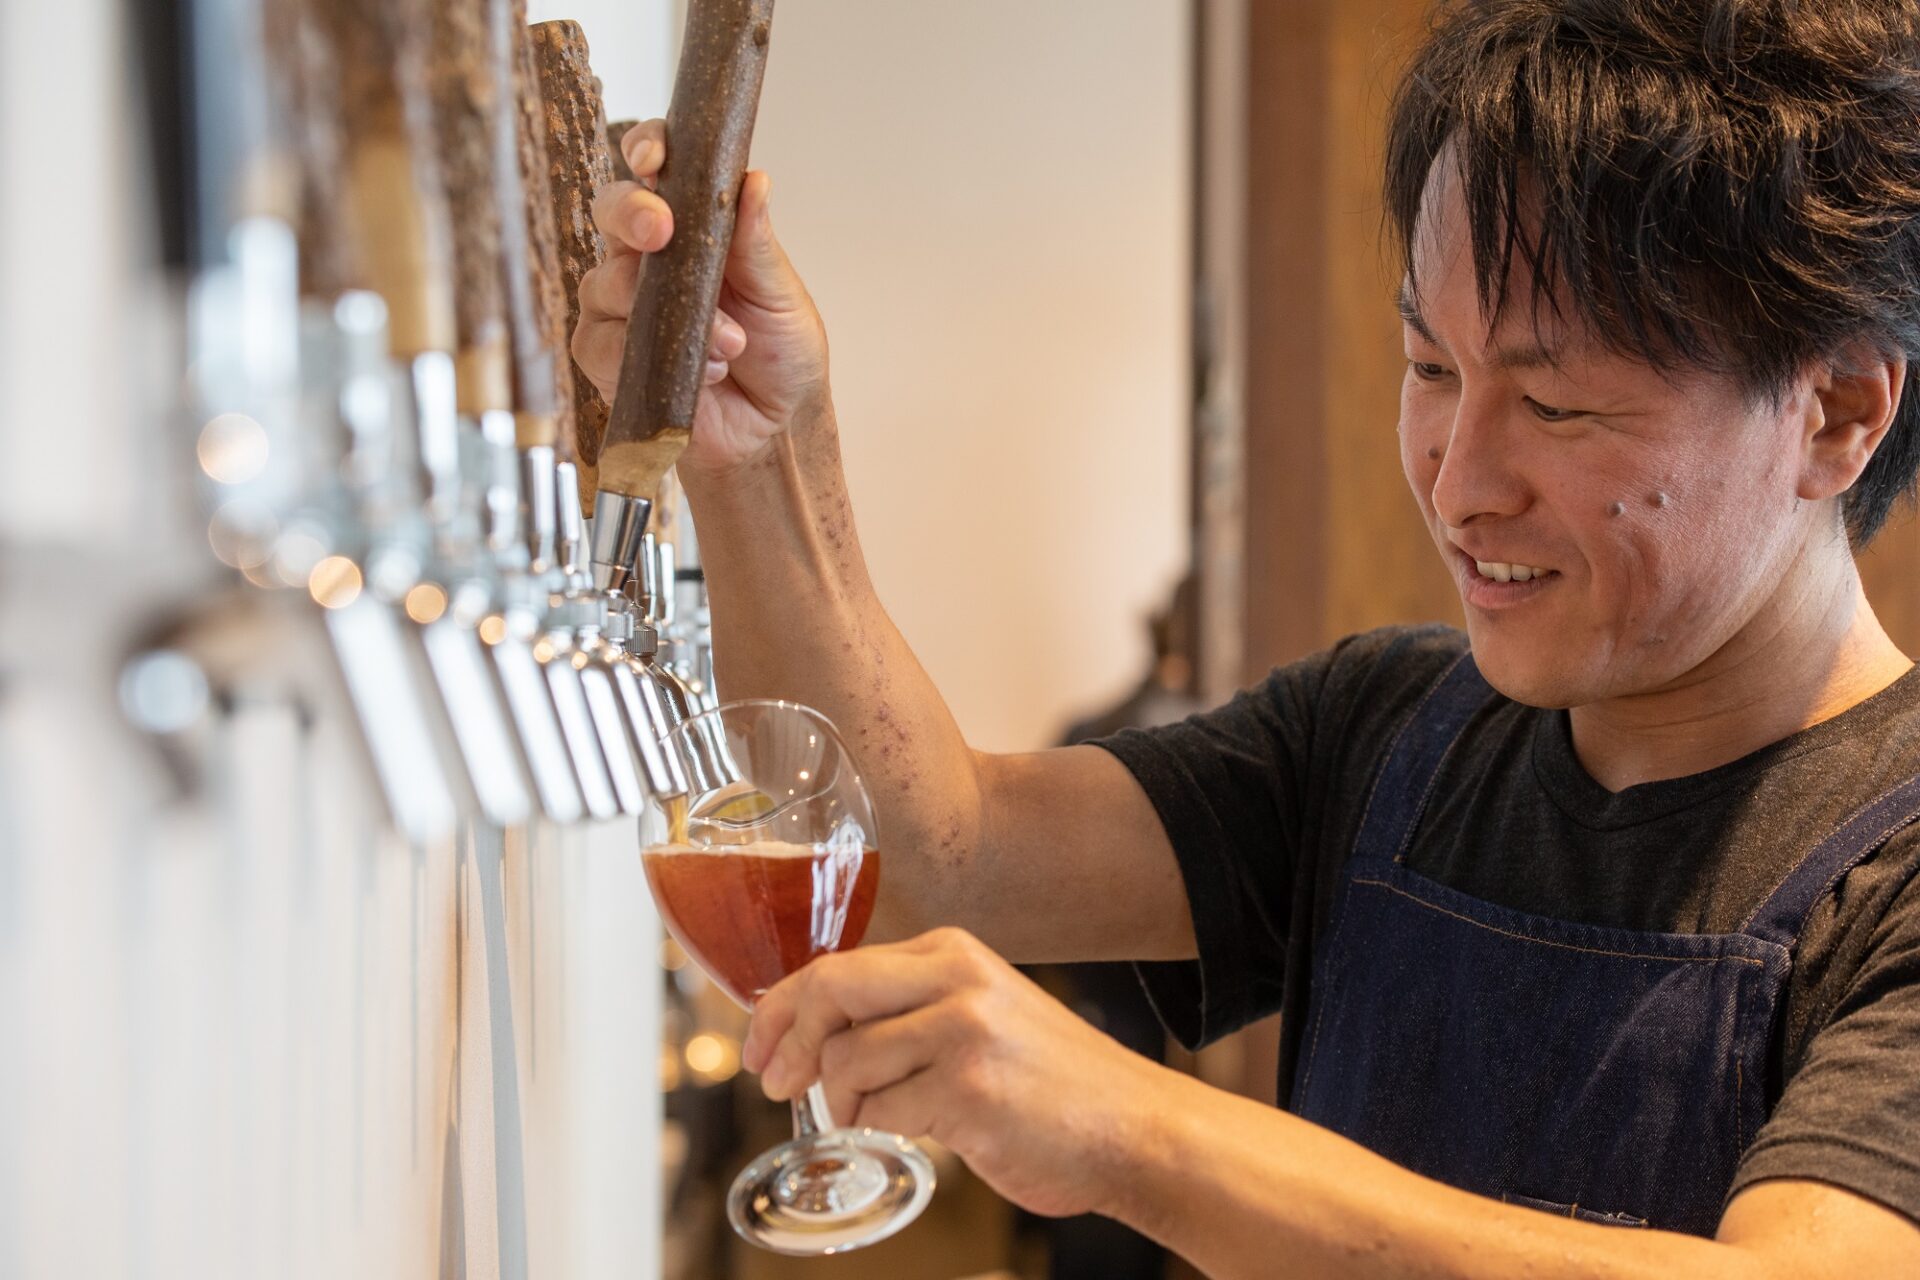 静岡市内に「クラフトビアステーション」「cove」の2店を手がける小島直哉さんは愛知県出身。大学時代からビール好きで、自動車部品メーカーに勤めていた時のカナダ・トロント研修期間にクラフトビールに目覚める。その後、半年間バンクーバーの醸造所で働き、2016年に「クラフトビアステーション」を開業。現在は「West Coast Brewing」で醸造家として研鑽を積みながら、自身の醸造所の創設を目指している。